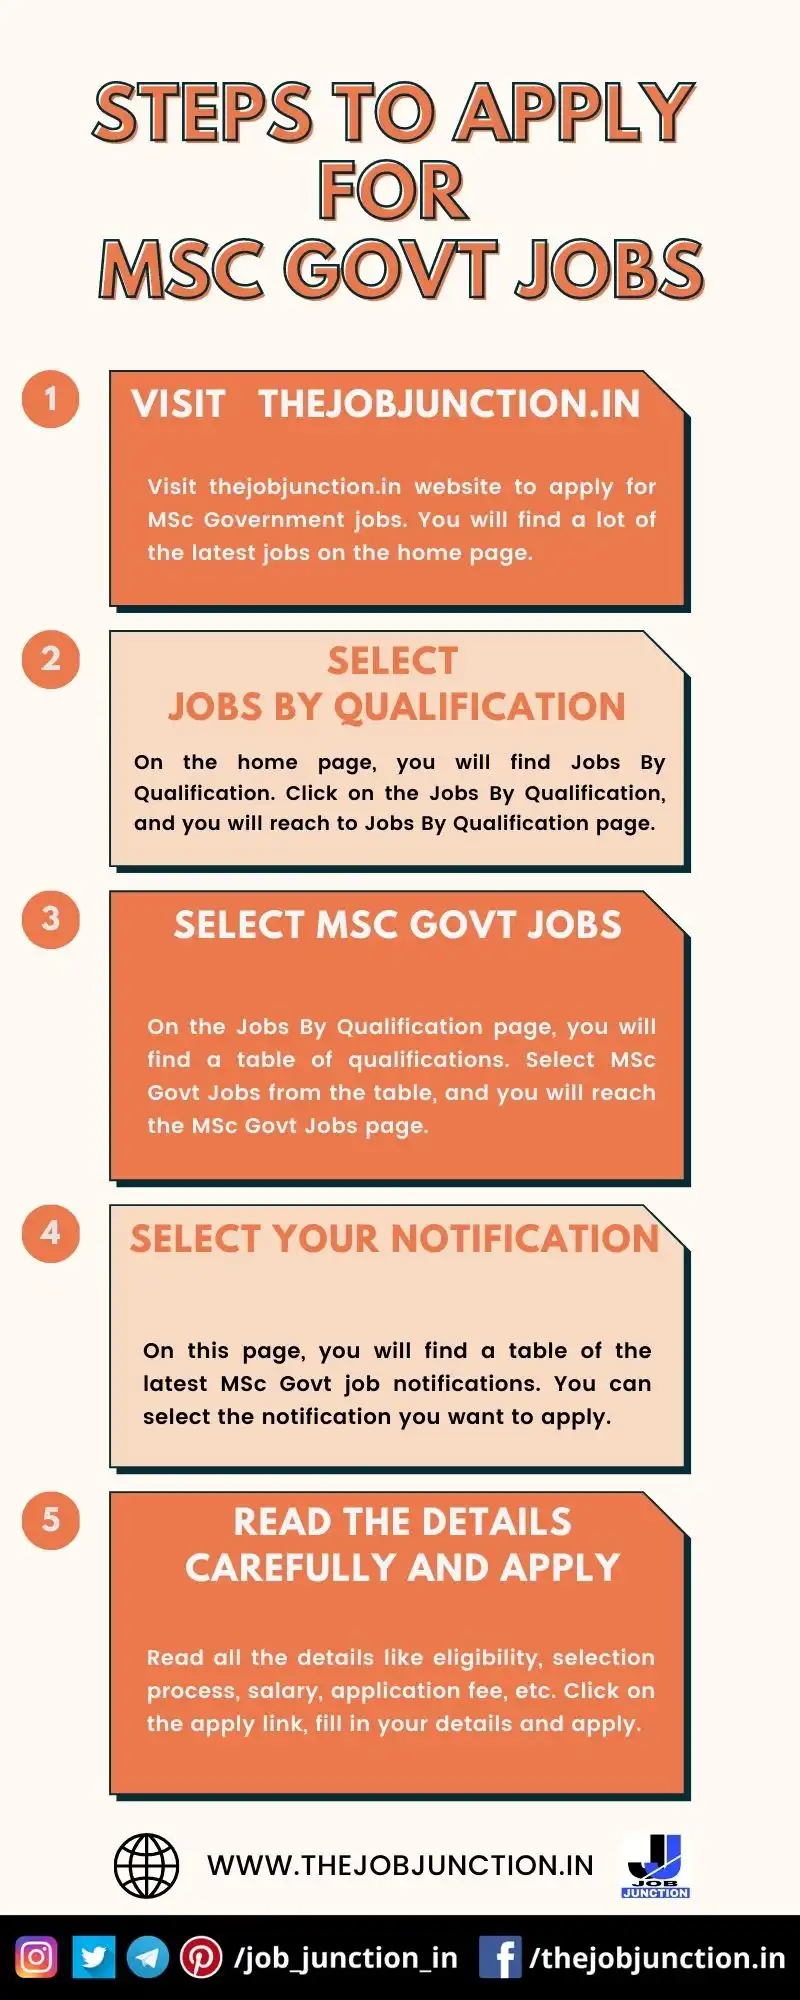 STEPS TO APPLY FOR MSC GOVT JOBS